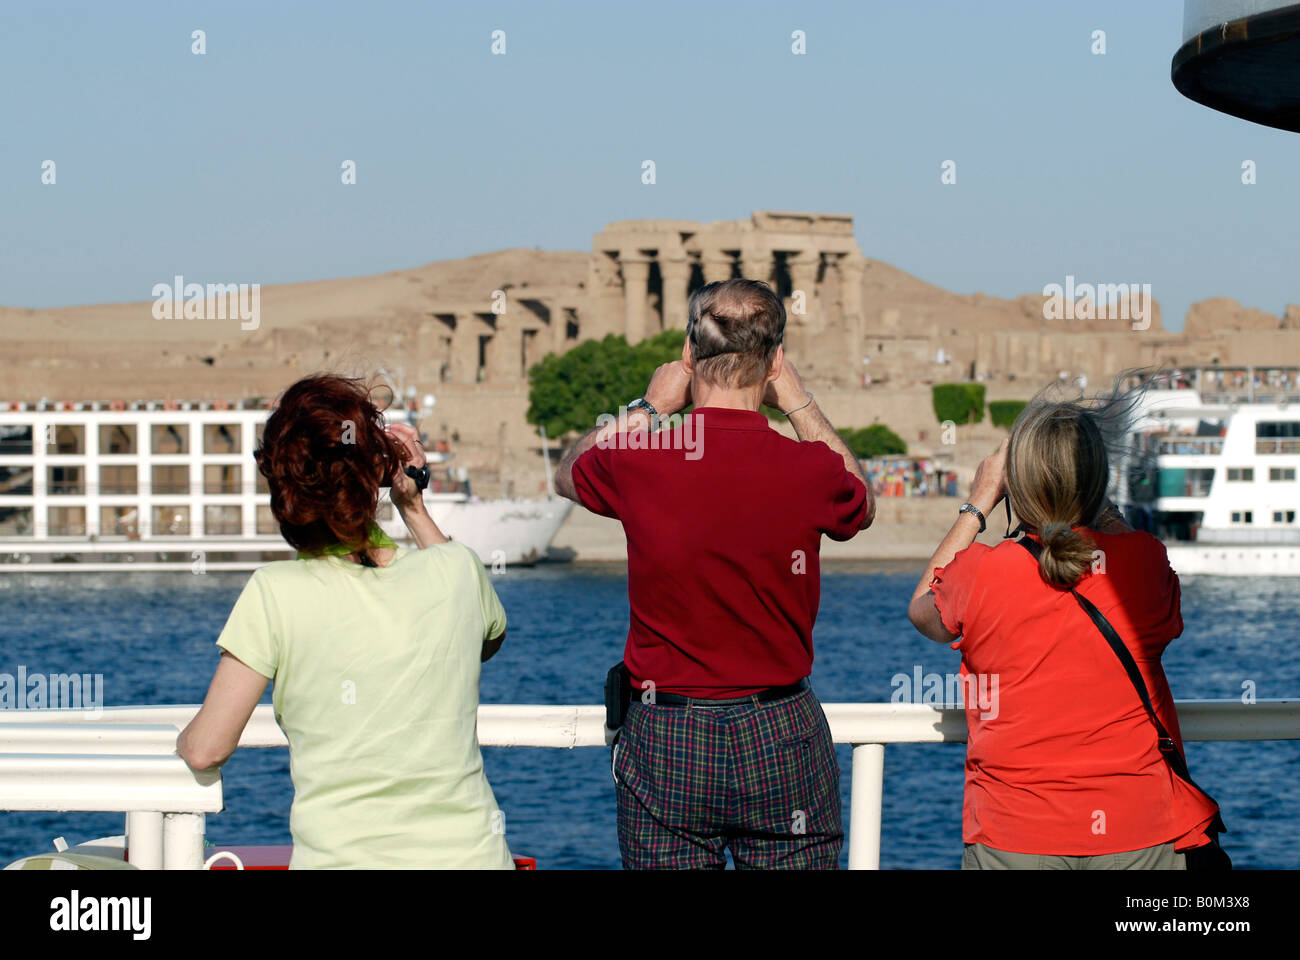 Les touristes voir le Temple de Sobek et Haroeris à Kom Ombo à partir de leur bateau de croisière sur le Nil Egypte Banque D'Images